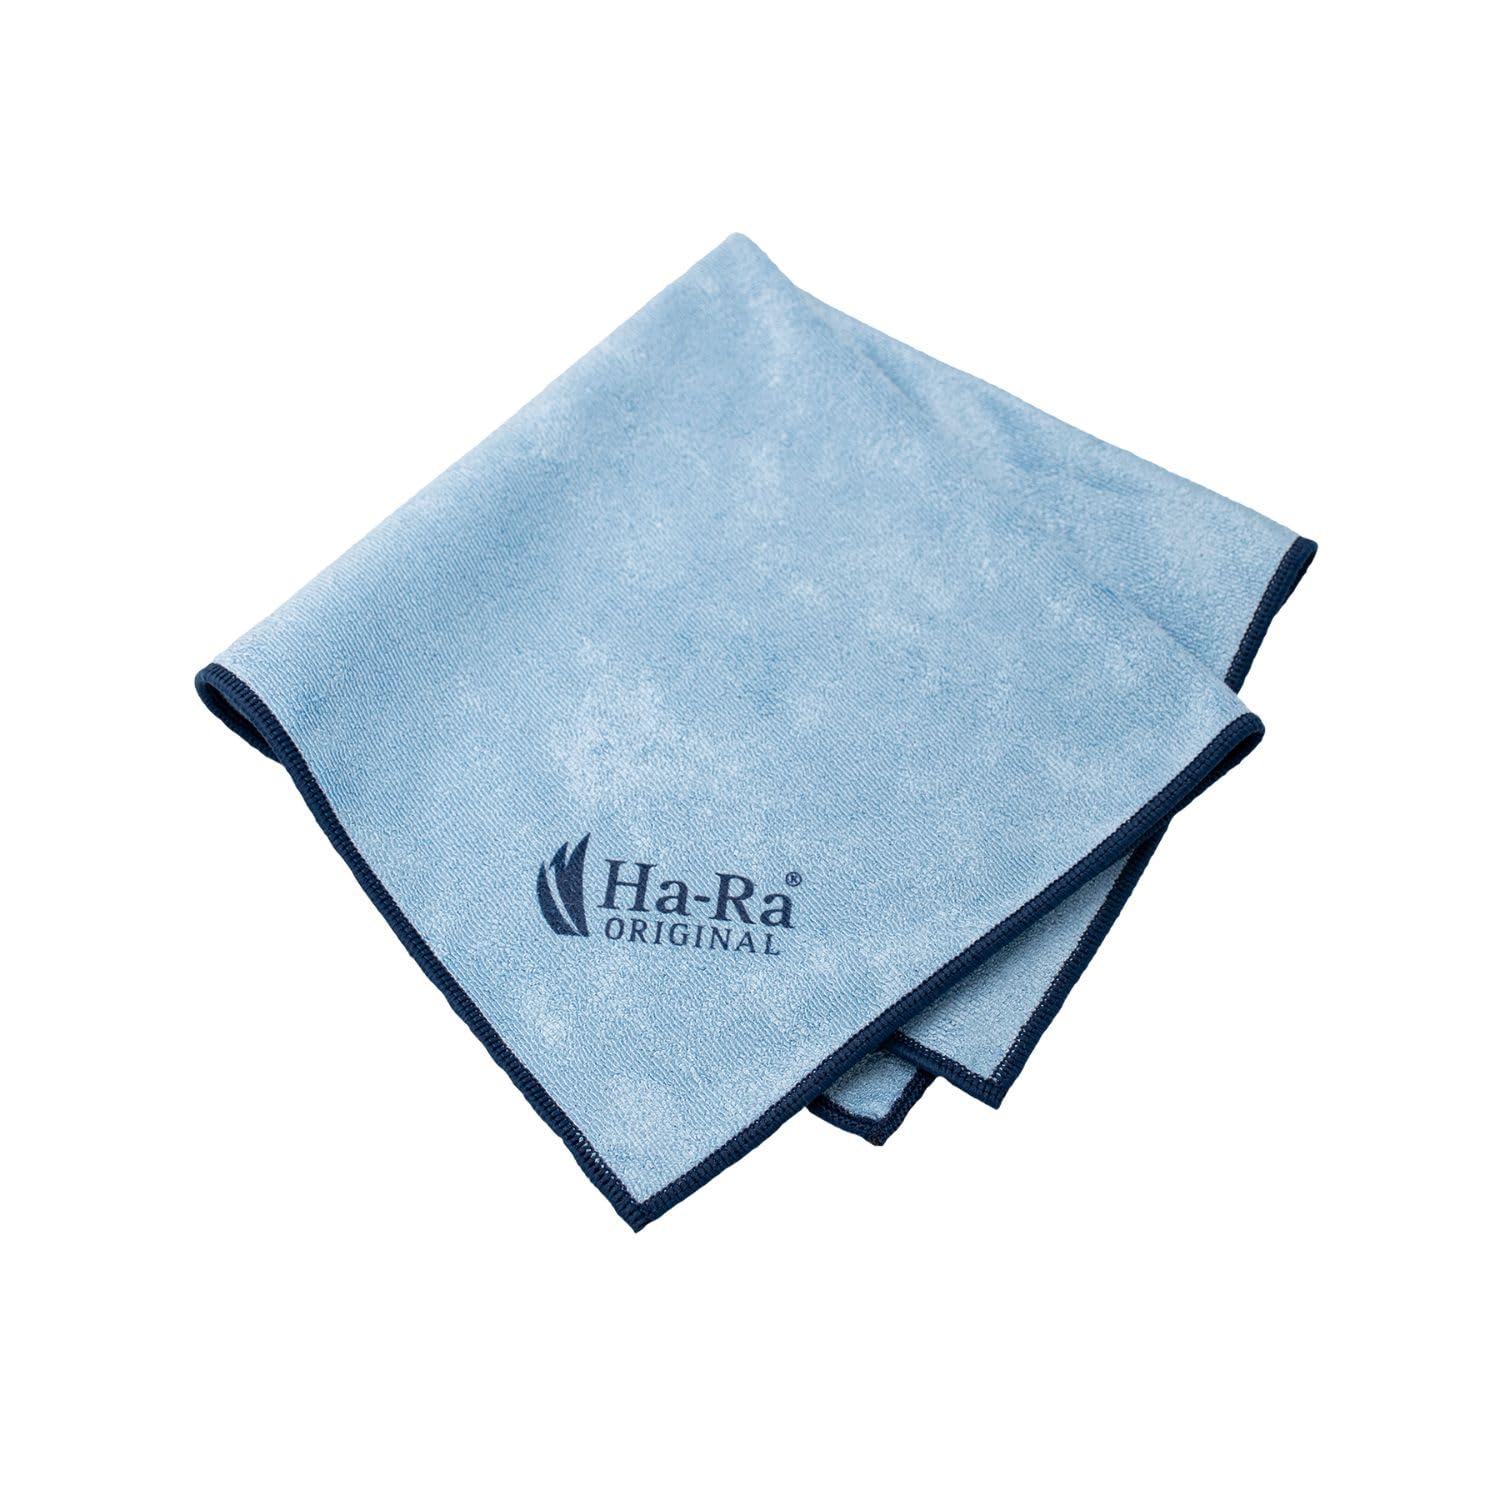 Ha-Ra Star-Tuch blau I Mikrofaser Tuch für die Oberflächen-Reinigung I Putztuch mit blauem Saum in 40 x 40 cm I Hochleistungs-Mikrofaser I hohe Reinigungskraft & trocknet streifenfrei